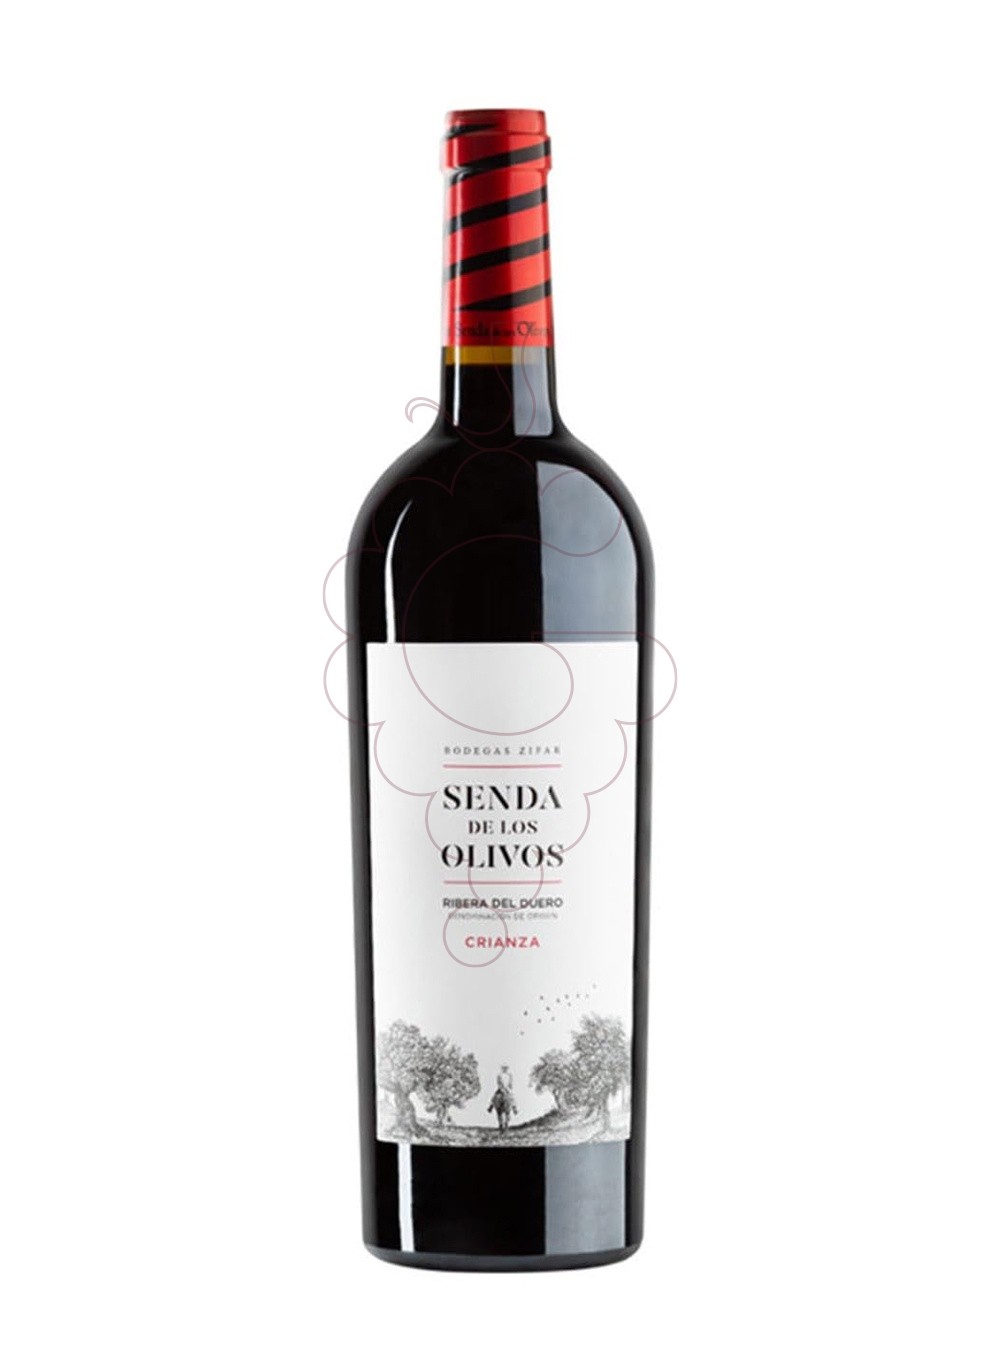 Photo Senda de los olivos cr. 2019 red wine